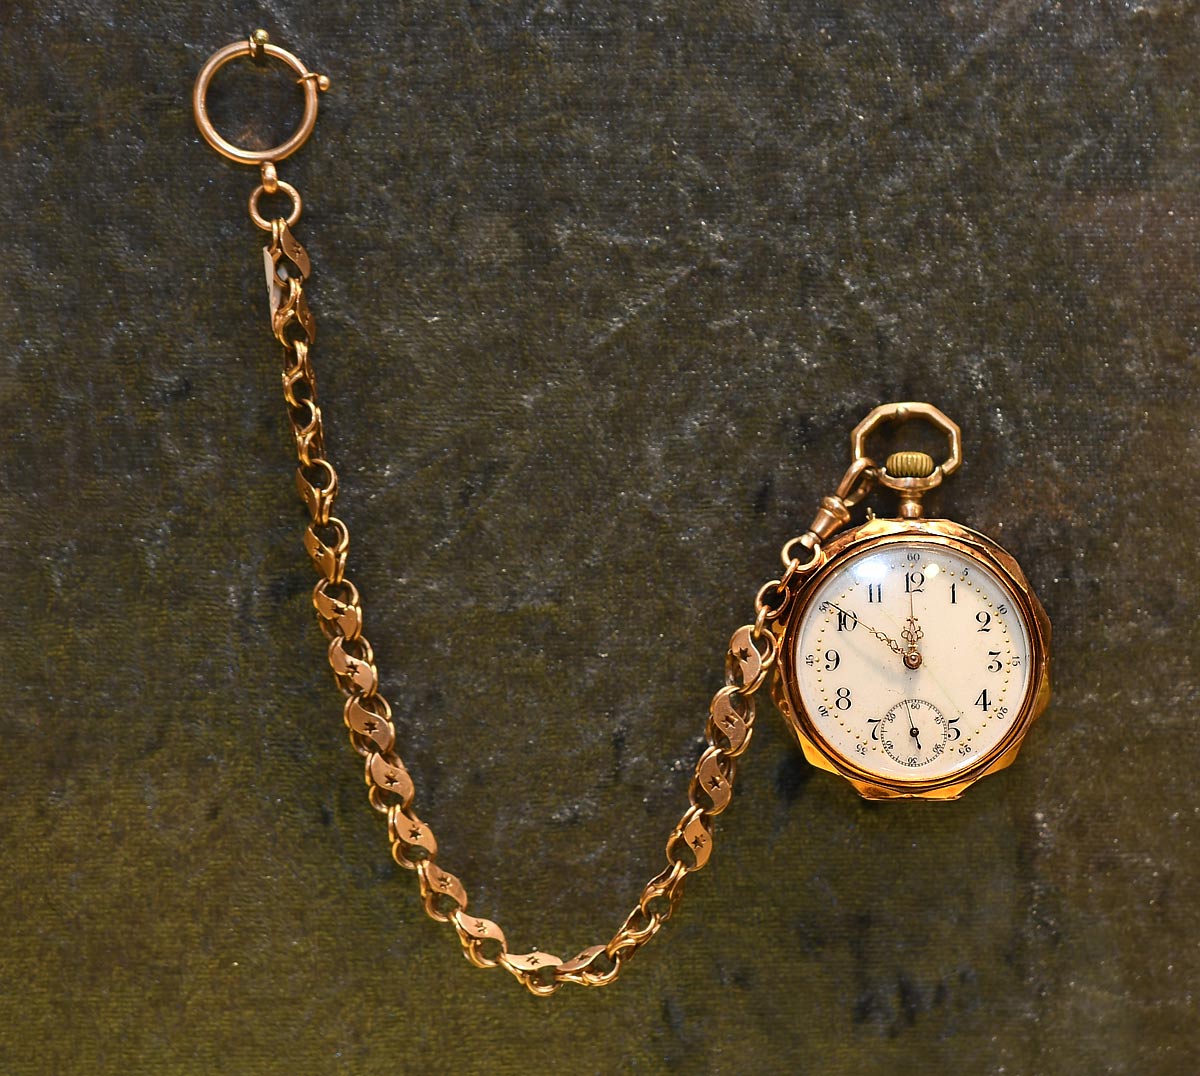 horloge met ketting - Keatsmuseum